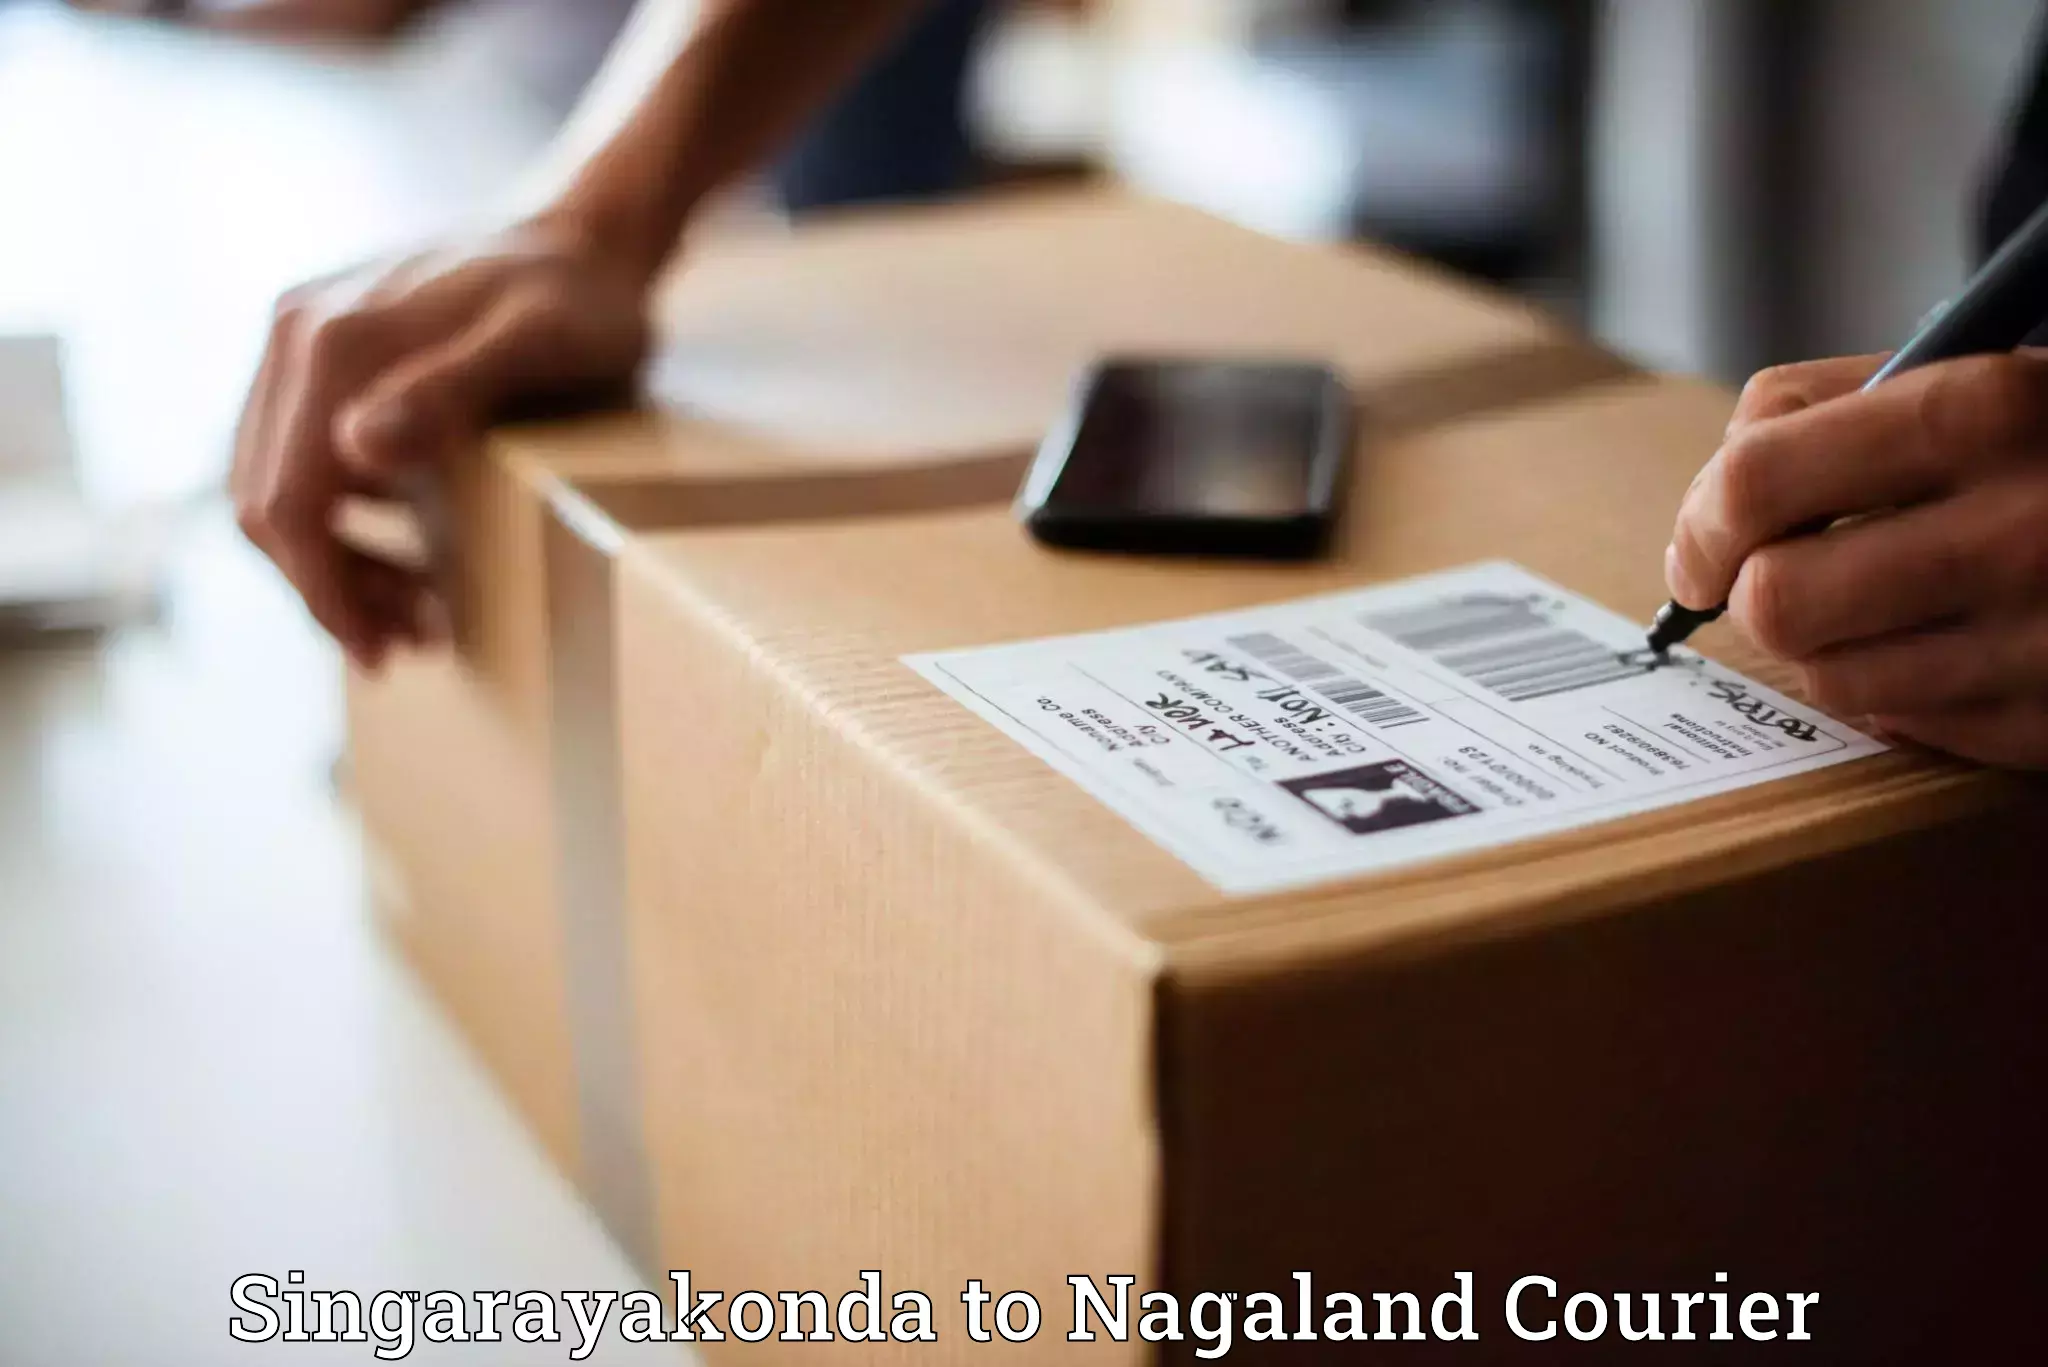 Global courier networks Singarayakonda to Wokha